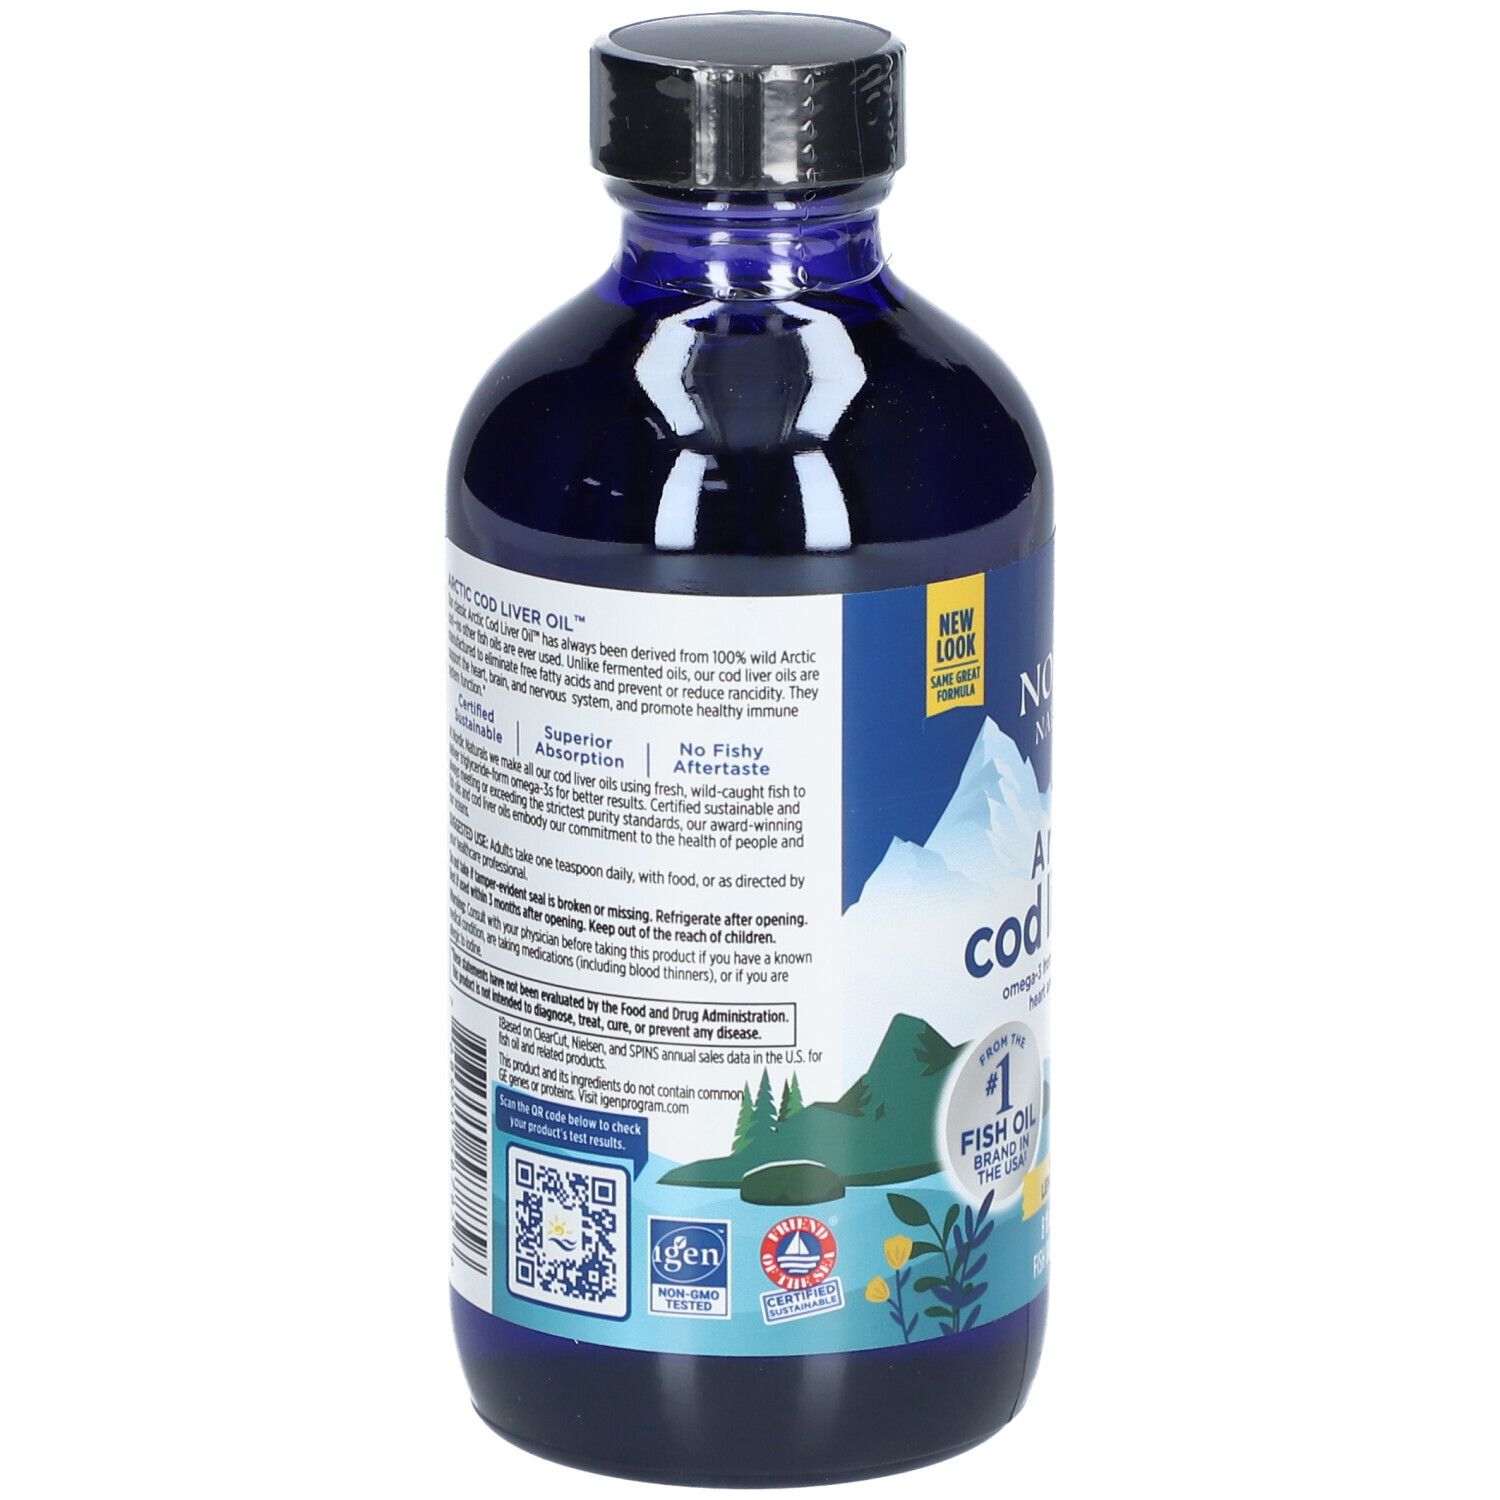 Nordic Naturals® Arctic Cod Liver Oil™ liquide